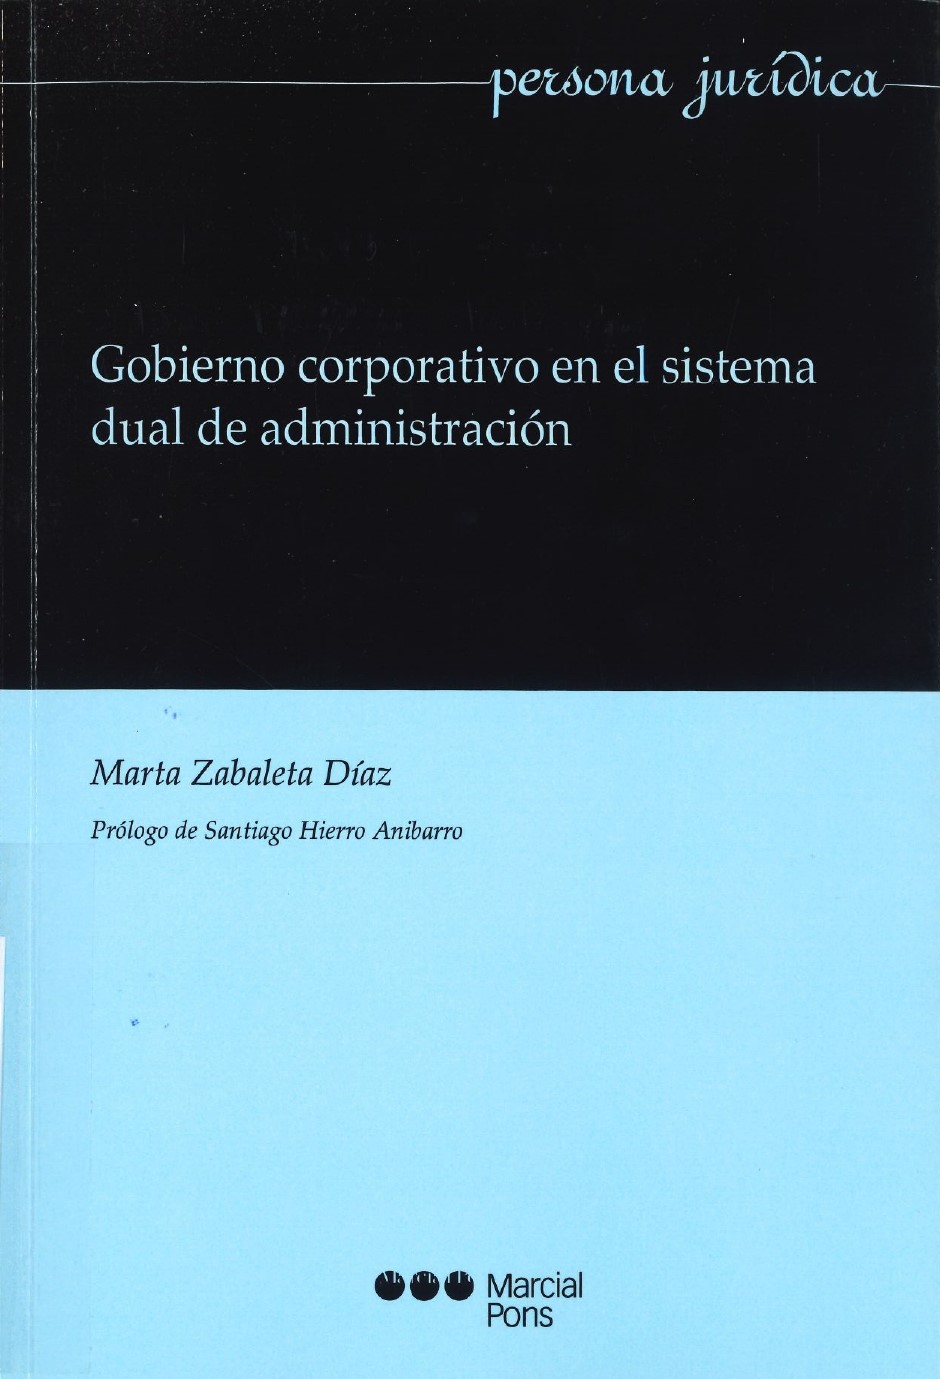 Imagen de portada del libro Gobierno corporativo en el sistema dual de administración